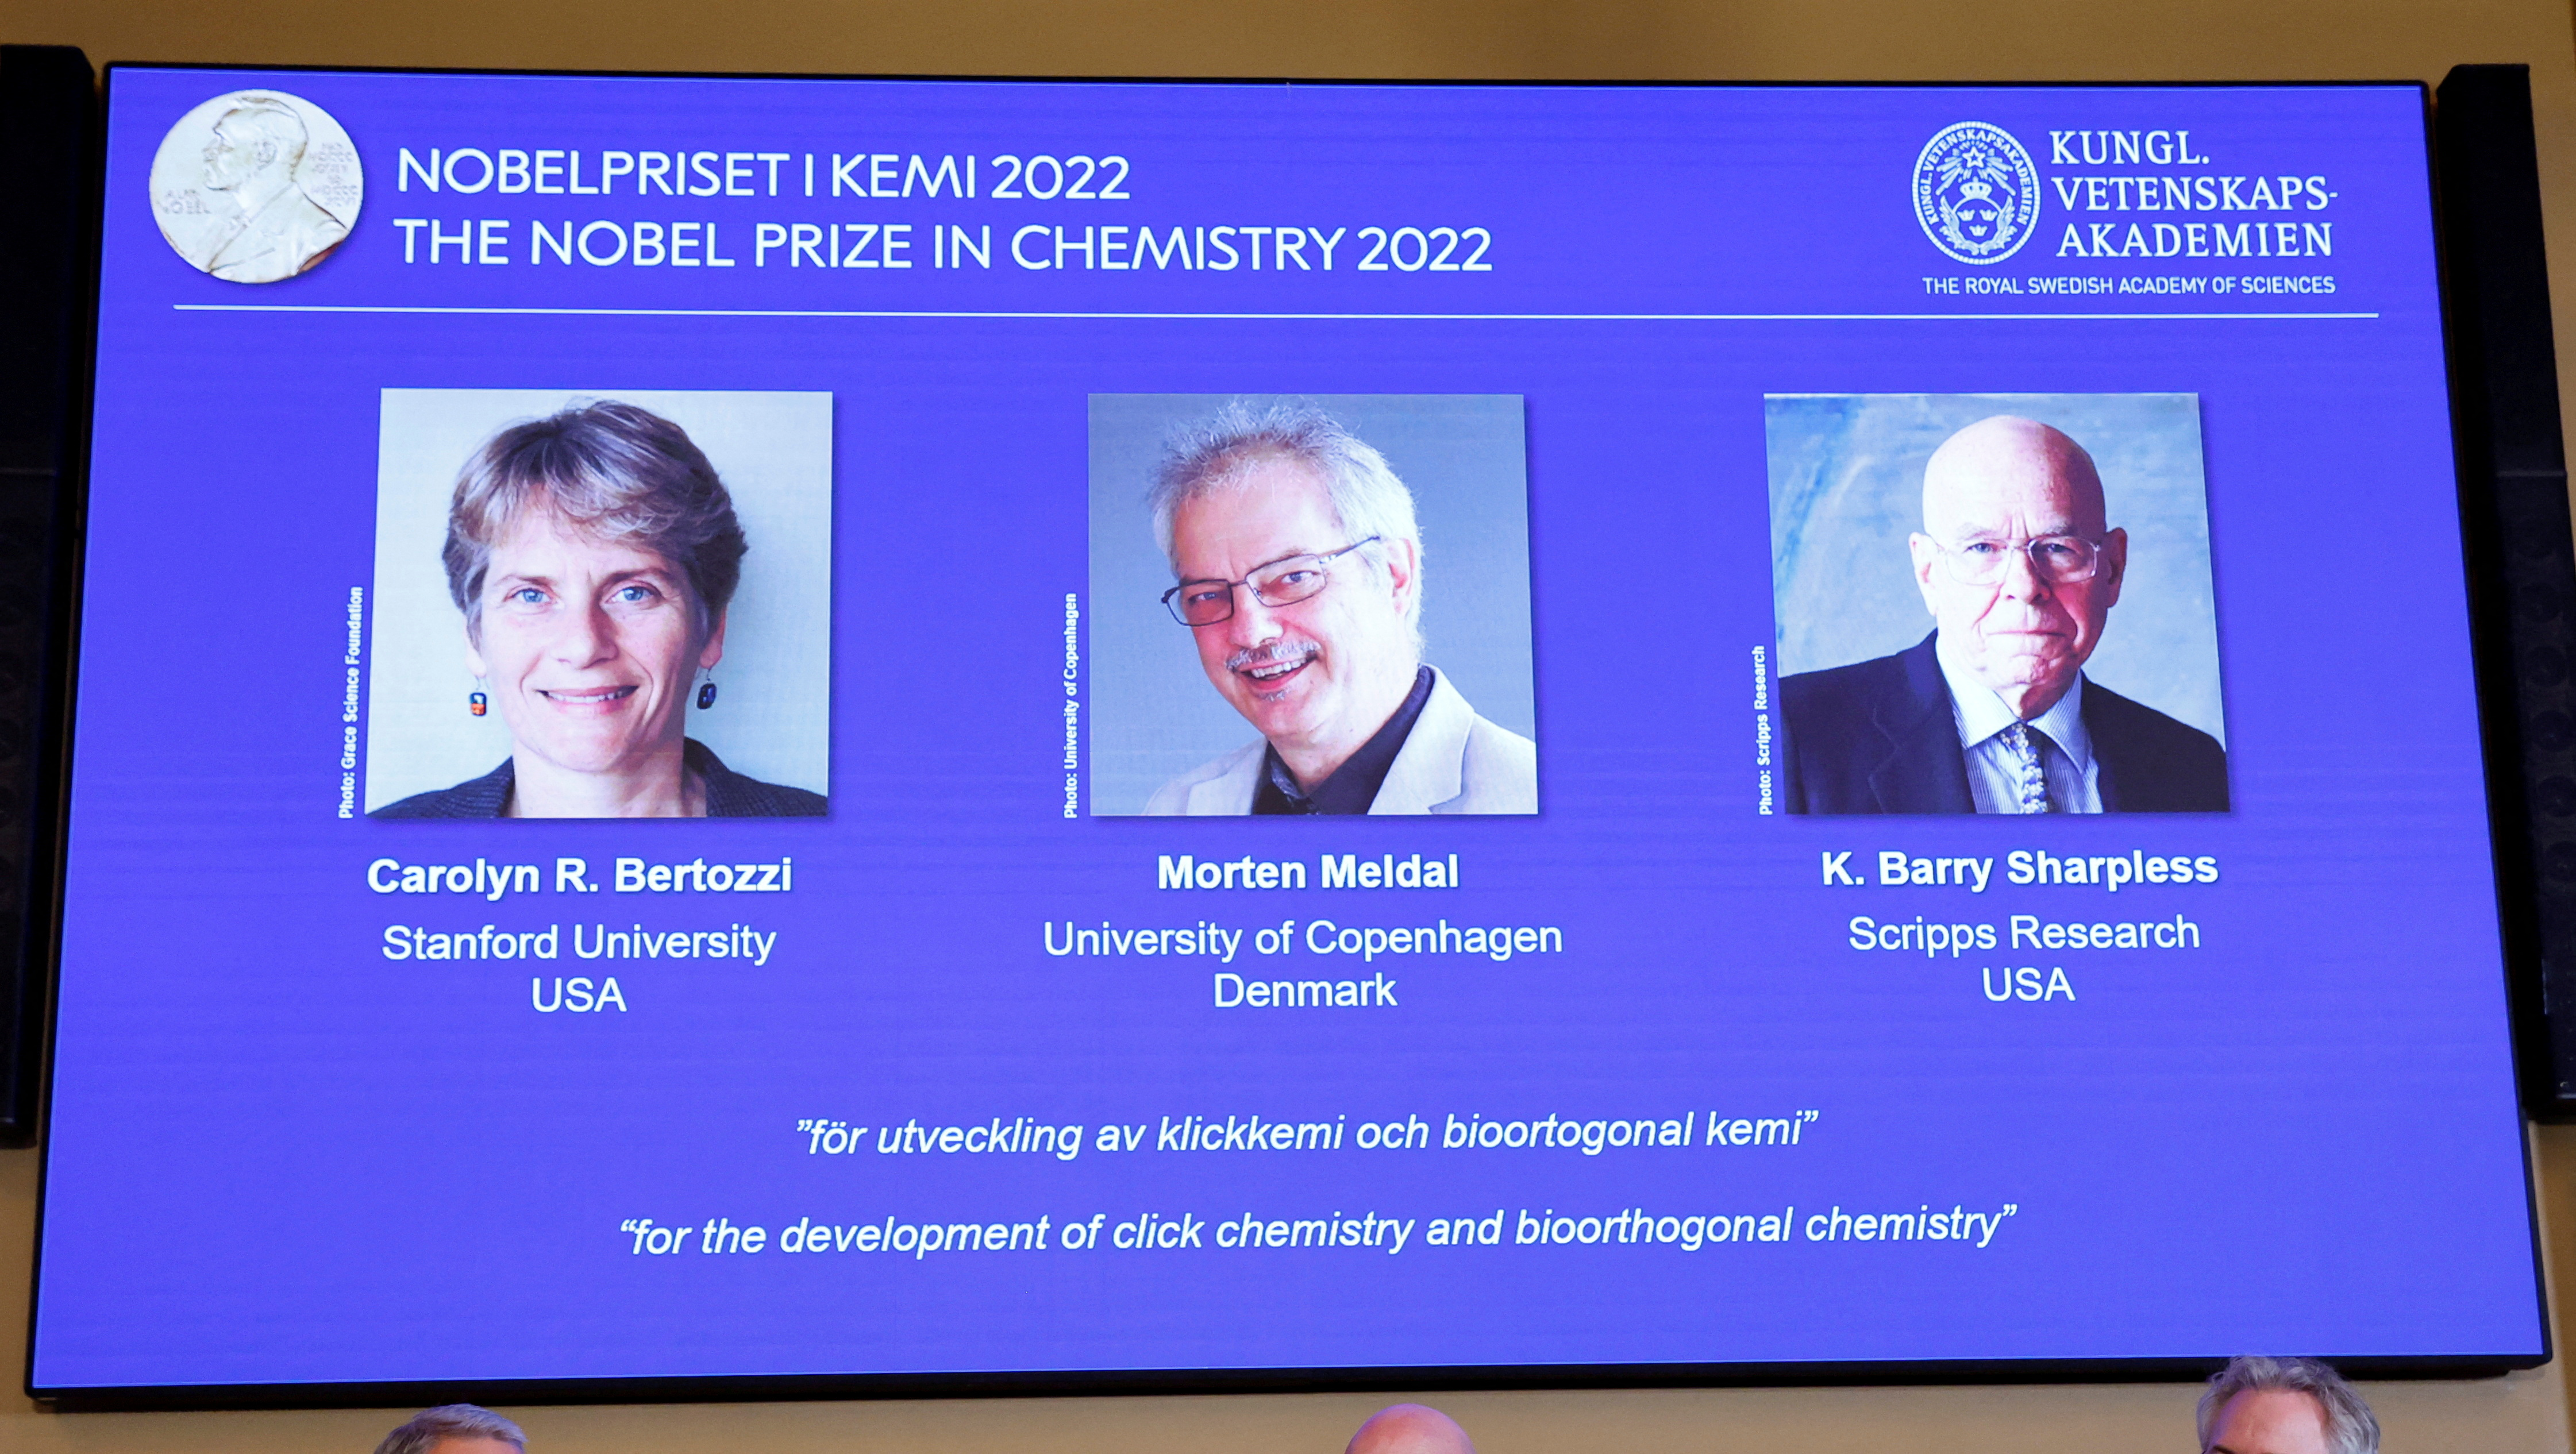 Los ganadores Carolyn R. Bertozzi (EEUU), Morten Meldal (Dinamarca) y K. Barry Sharpless (EEUU) del Premio Nobel de Química 2022 durante una conferencia de prensa en la Real Academia Sueca de Ciencias en Estocolmo, Suecia